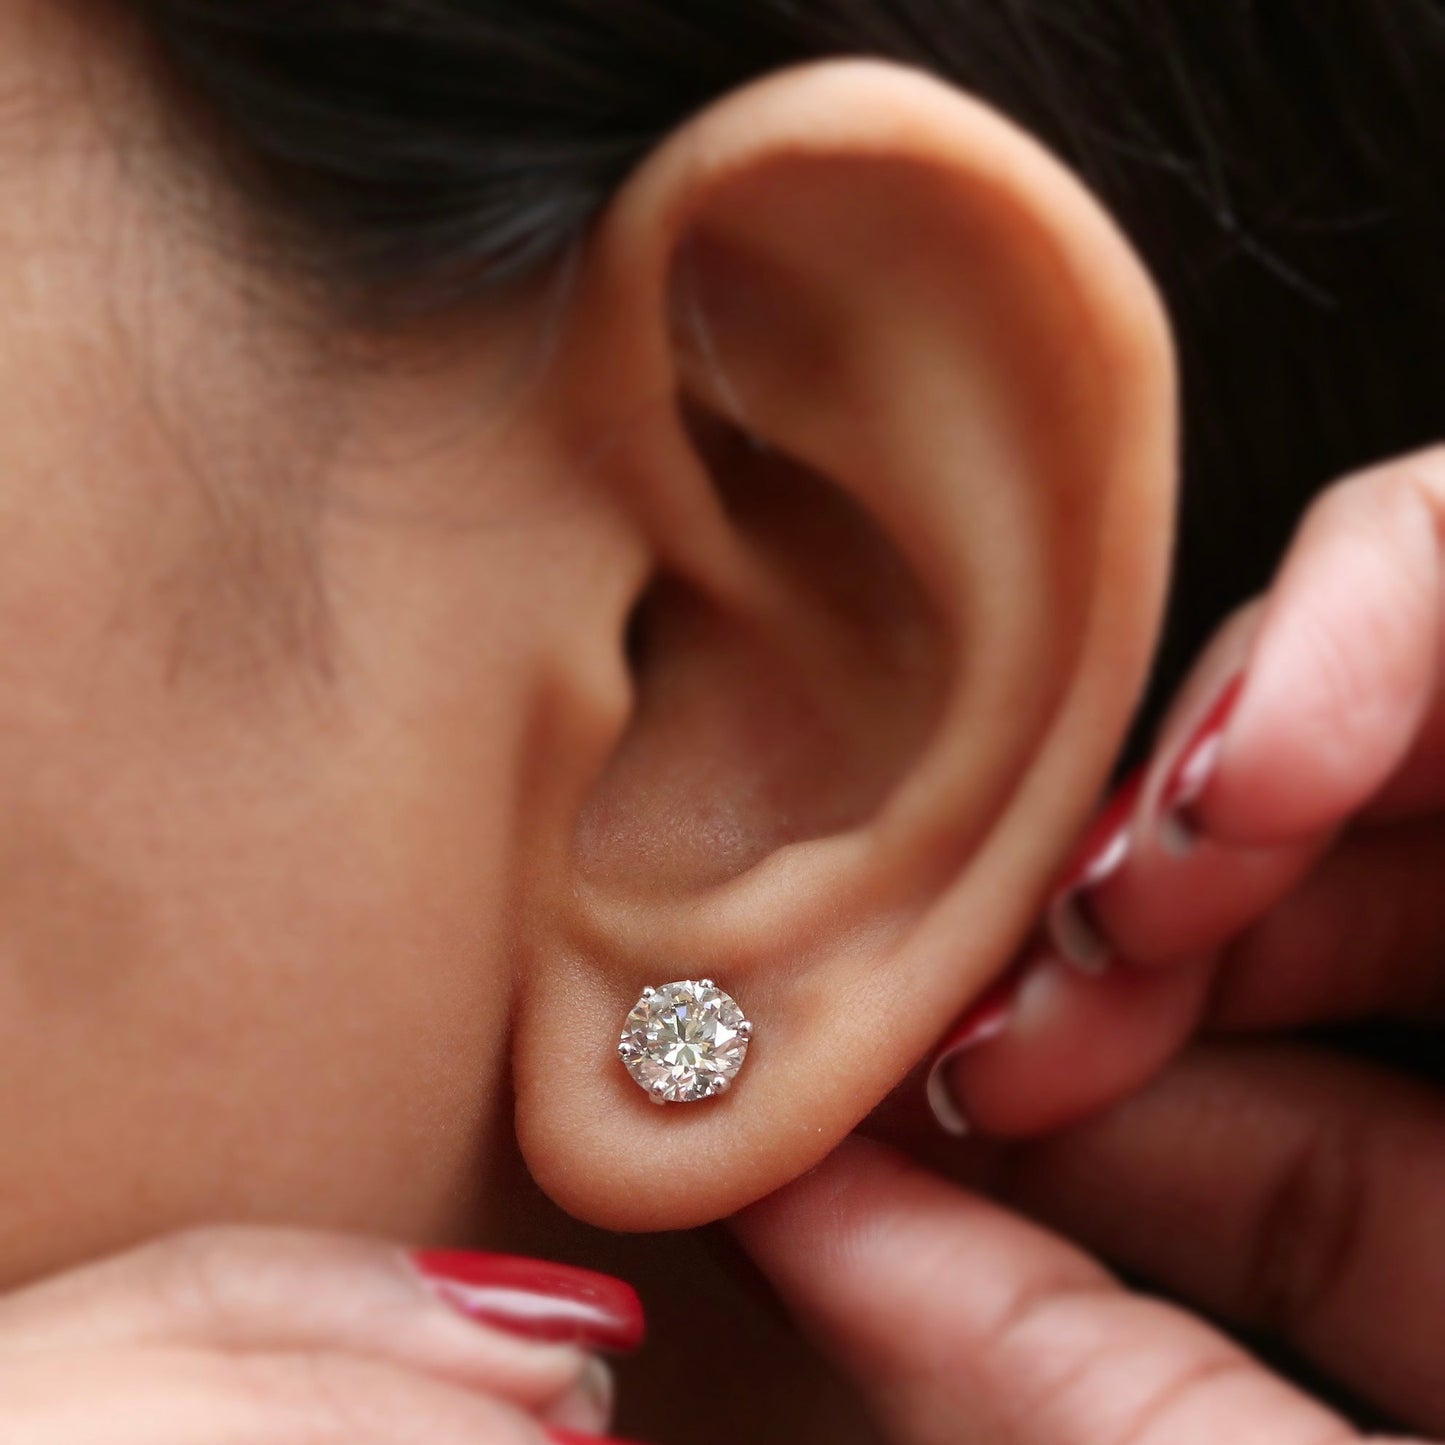 Gladiolus Lab Grown Diamond Earring - Fiona Diamonds - Fiona Diamonds